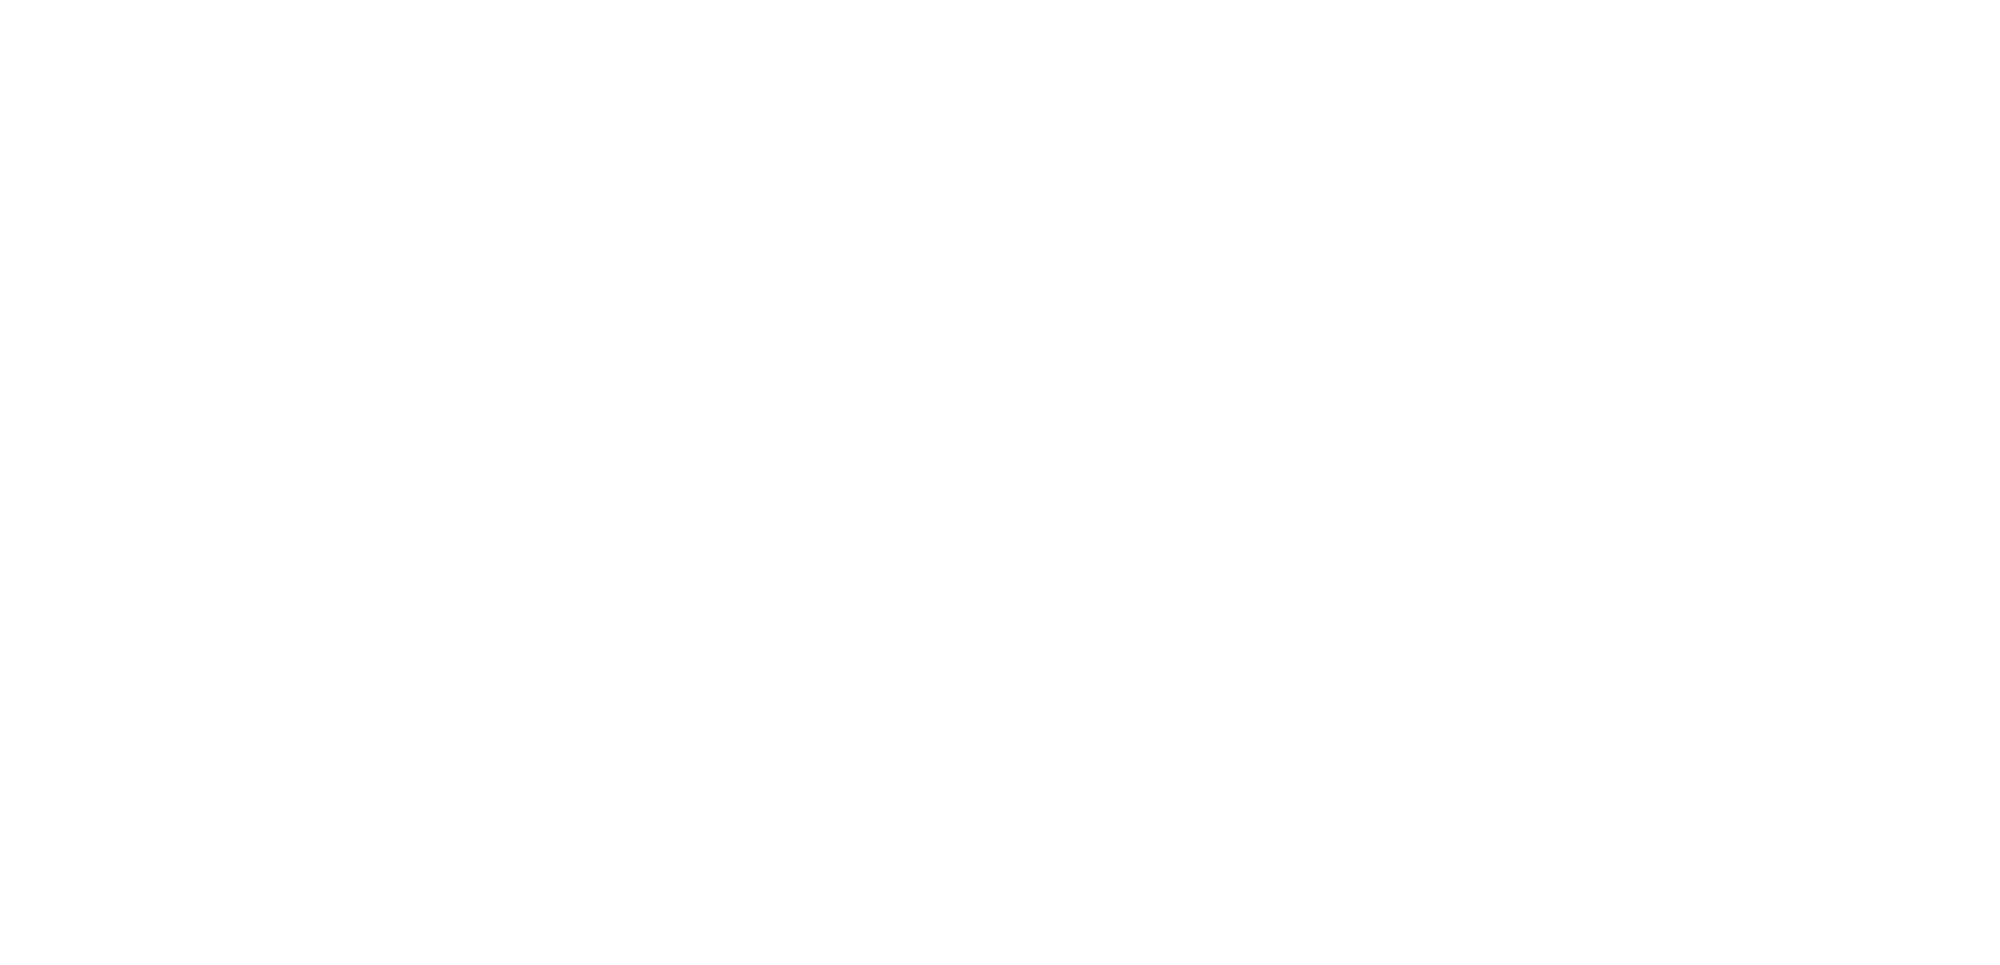 Interstellar Digital